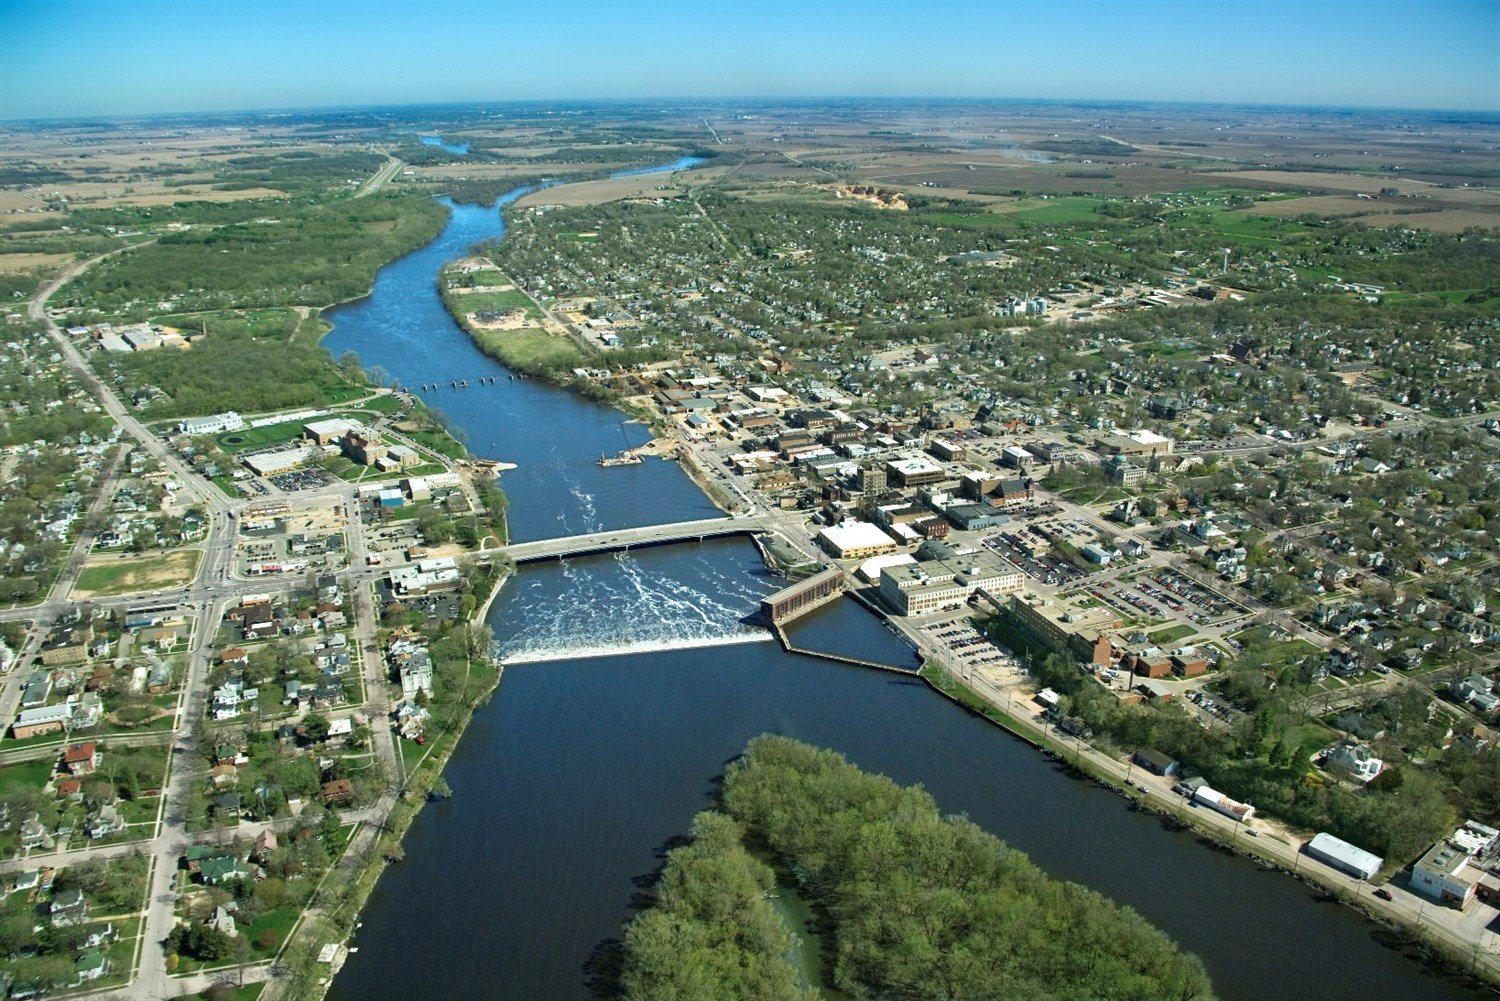 نهر المسيسيبي نهر في الولايات المتحدة الأمريكية